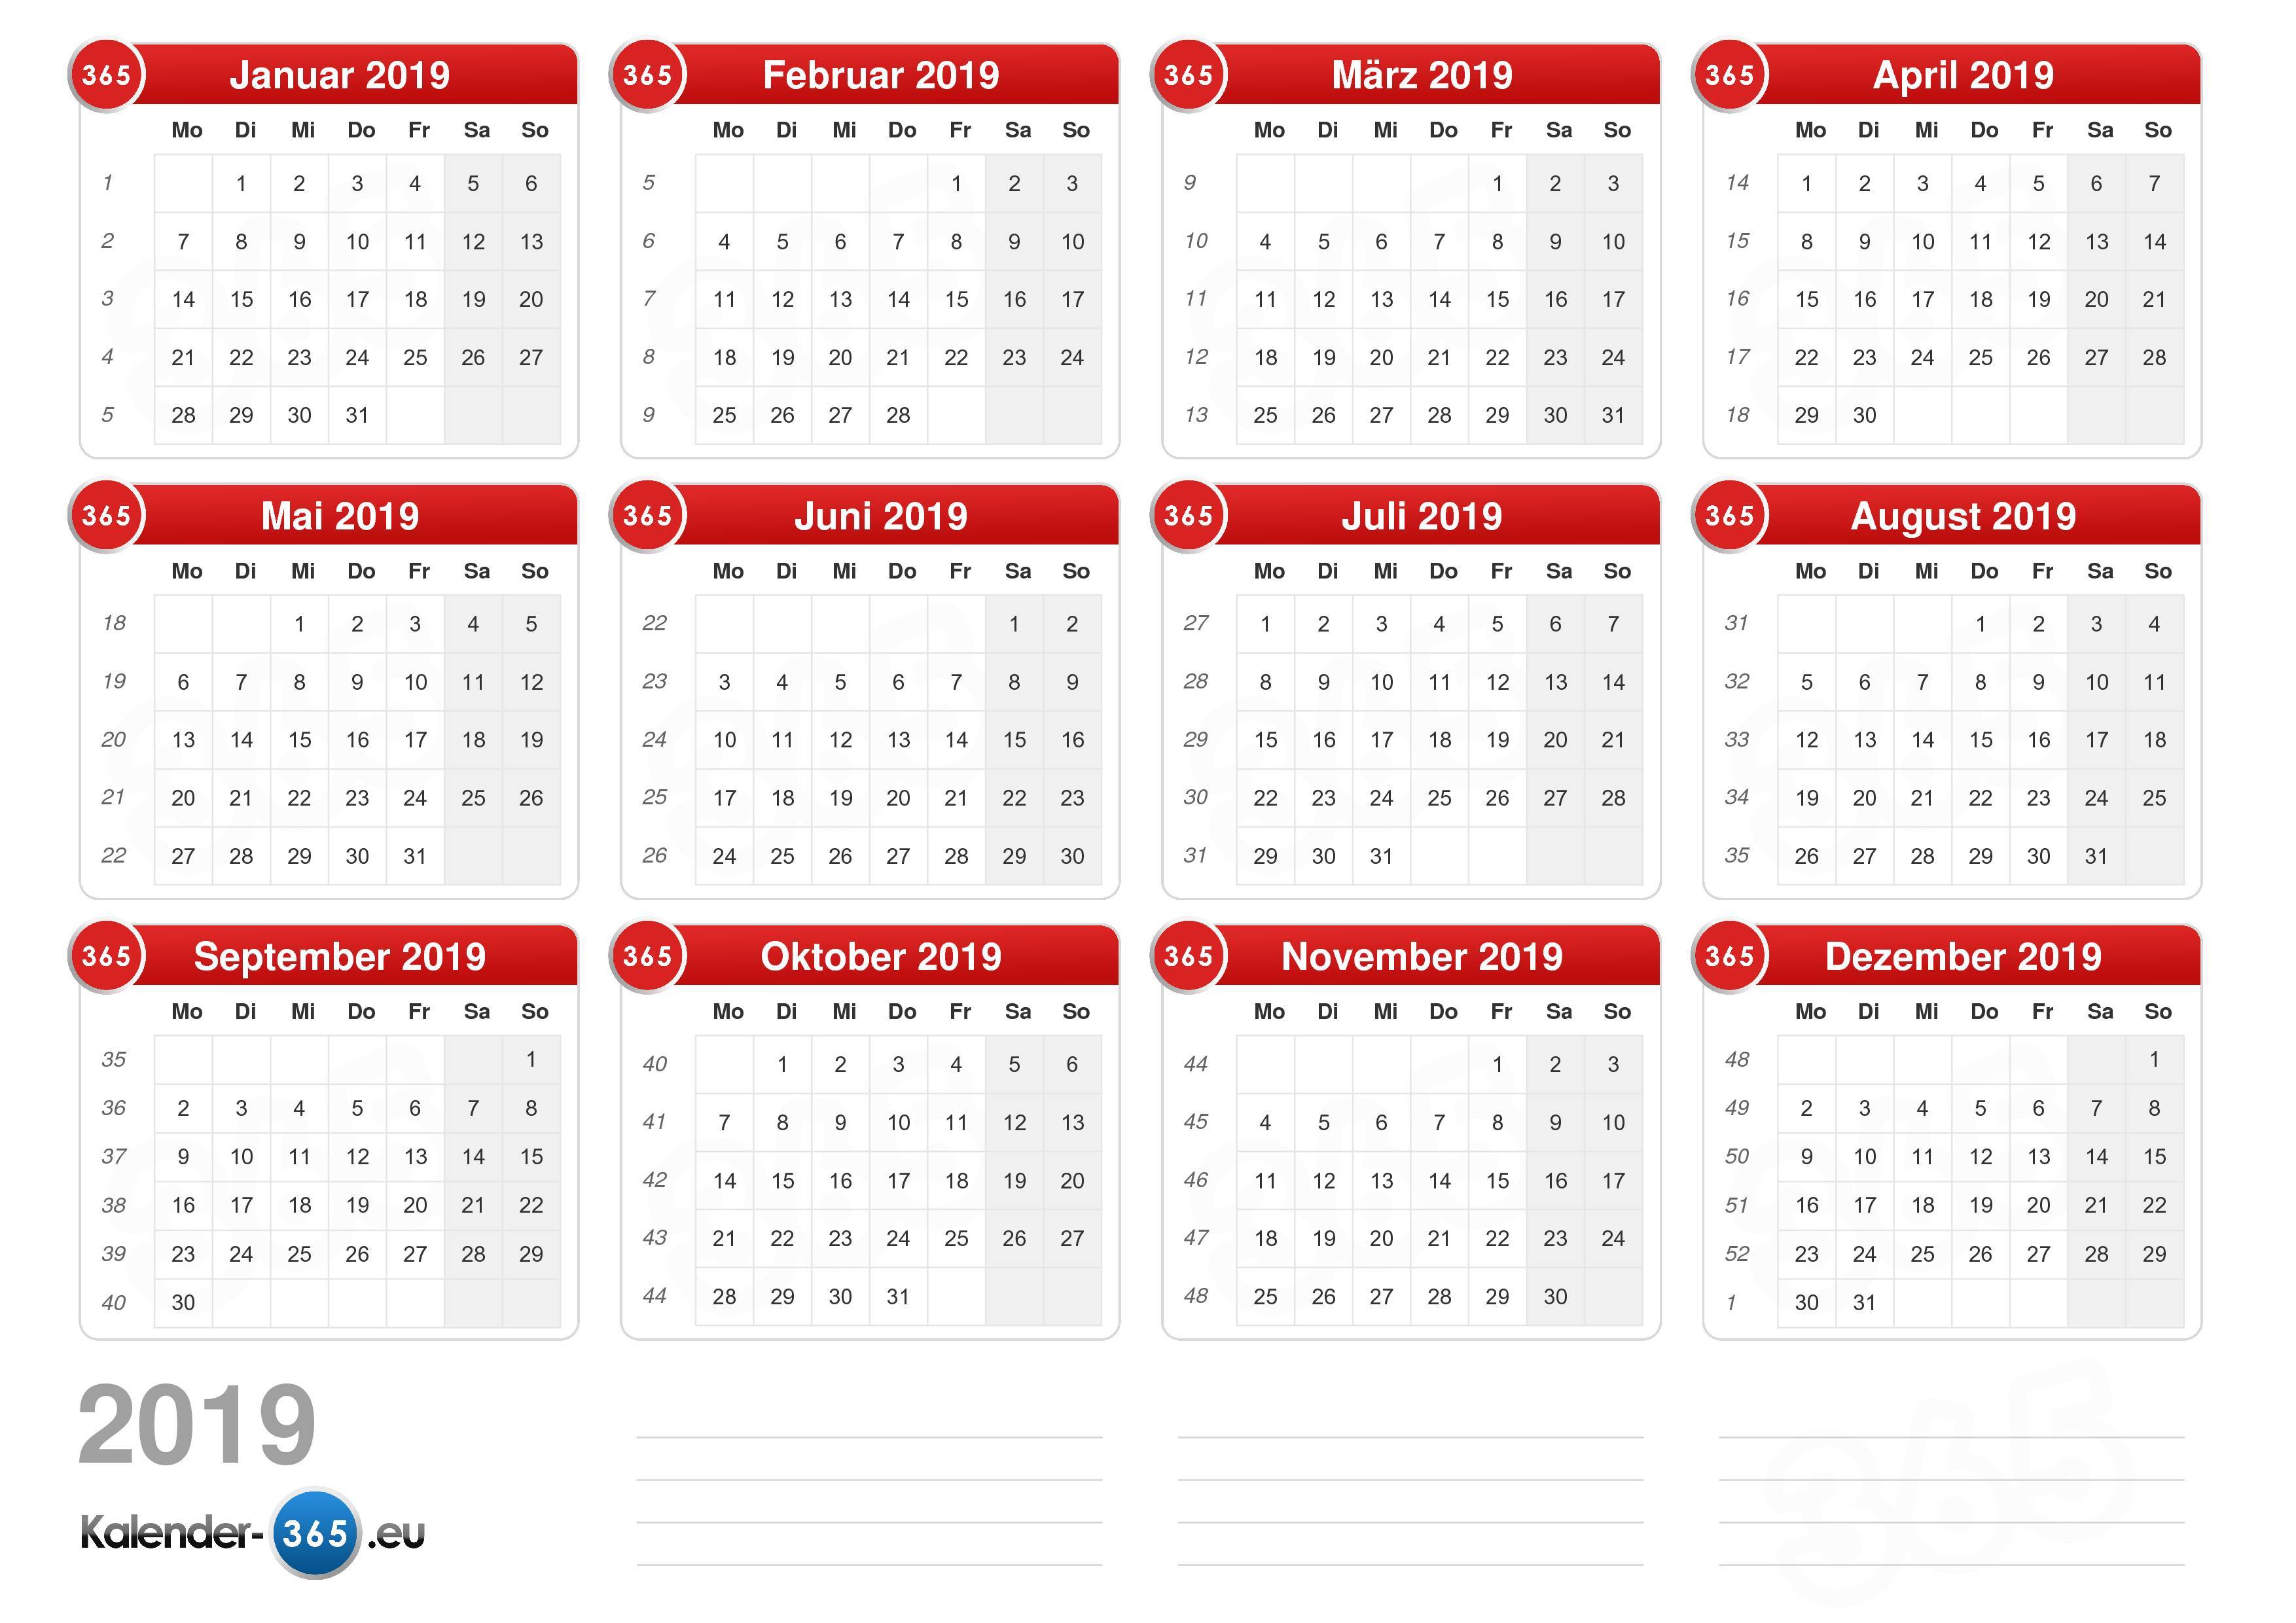 Julianischer Kalender 2019 - Kalender Plan